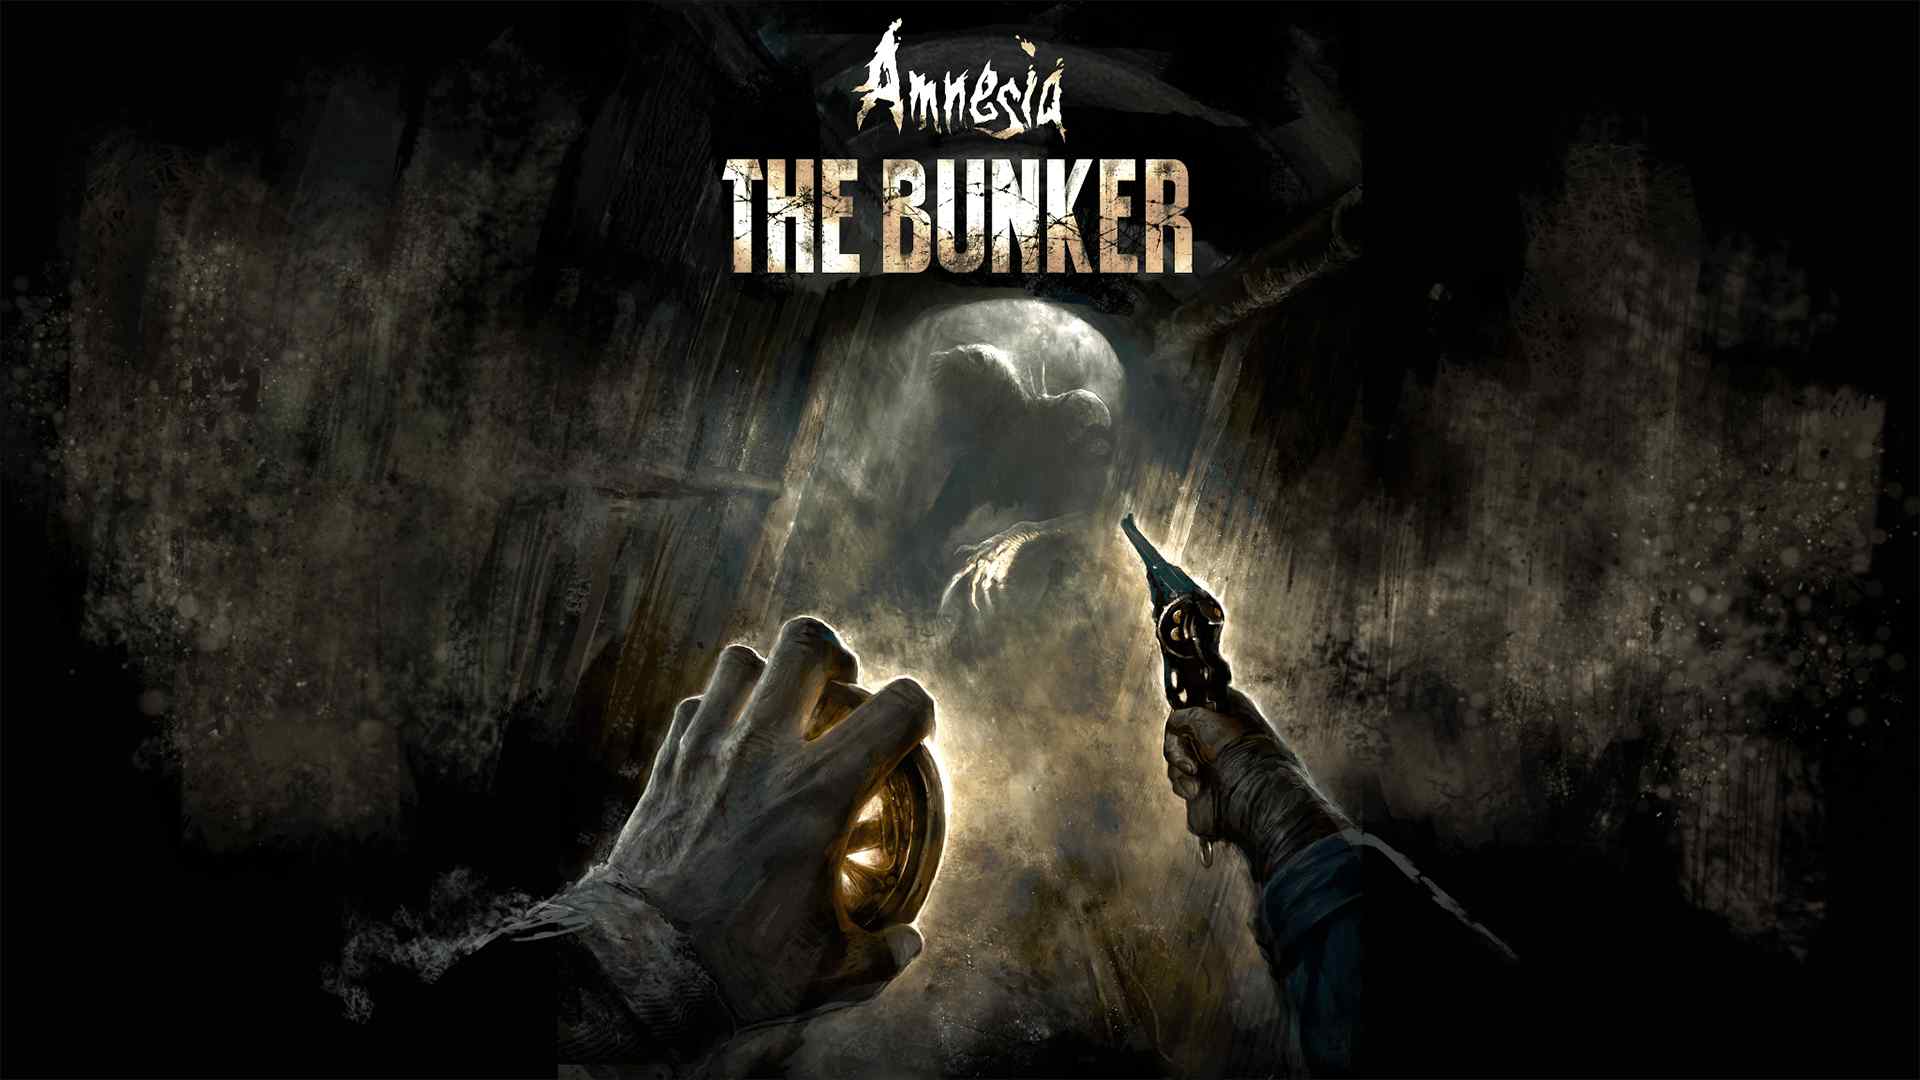 Wydano nową łatkę do survivalowej strzelanki Amnesia: The Bunker ma nową łatkę, która dodaje napisy, pomoc w celowaniu i inne ustawienia ułatwień dostępu.